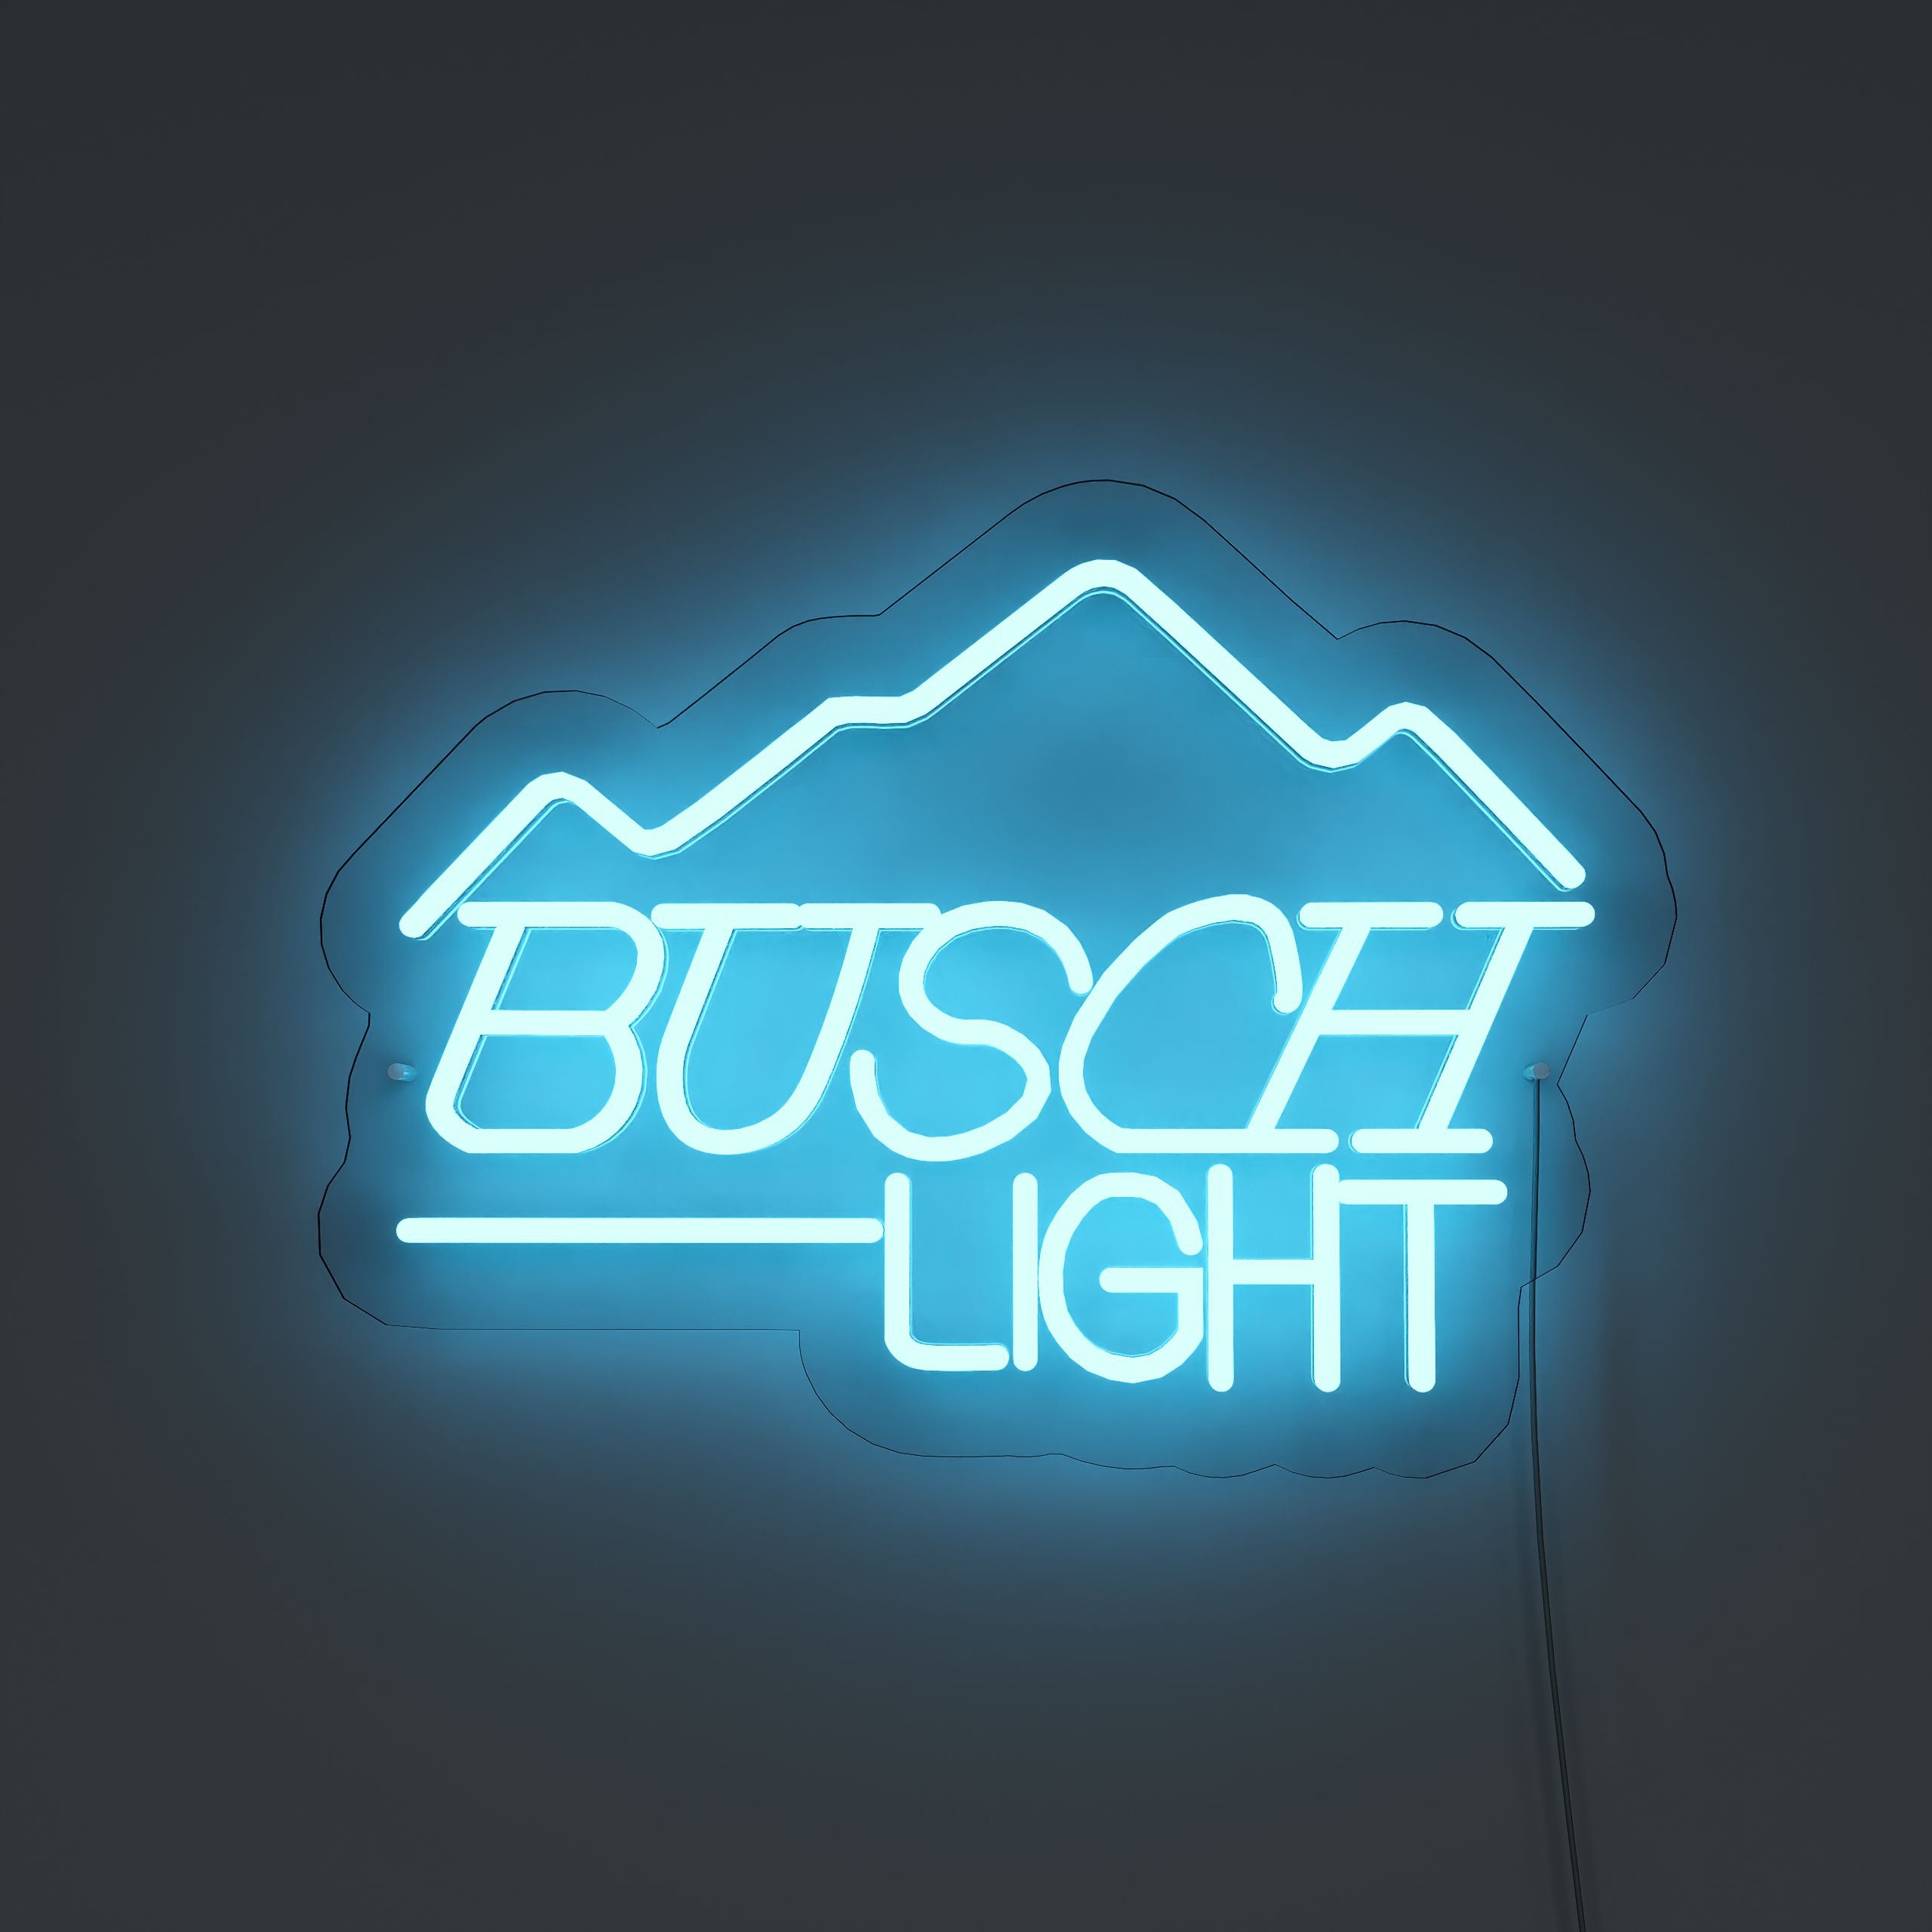 fbusch-light-neon-signs-DarkBlue-Neon-sign-Lite